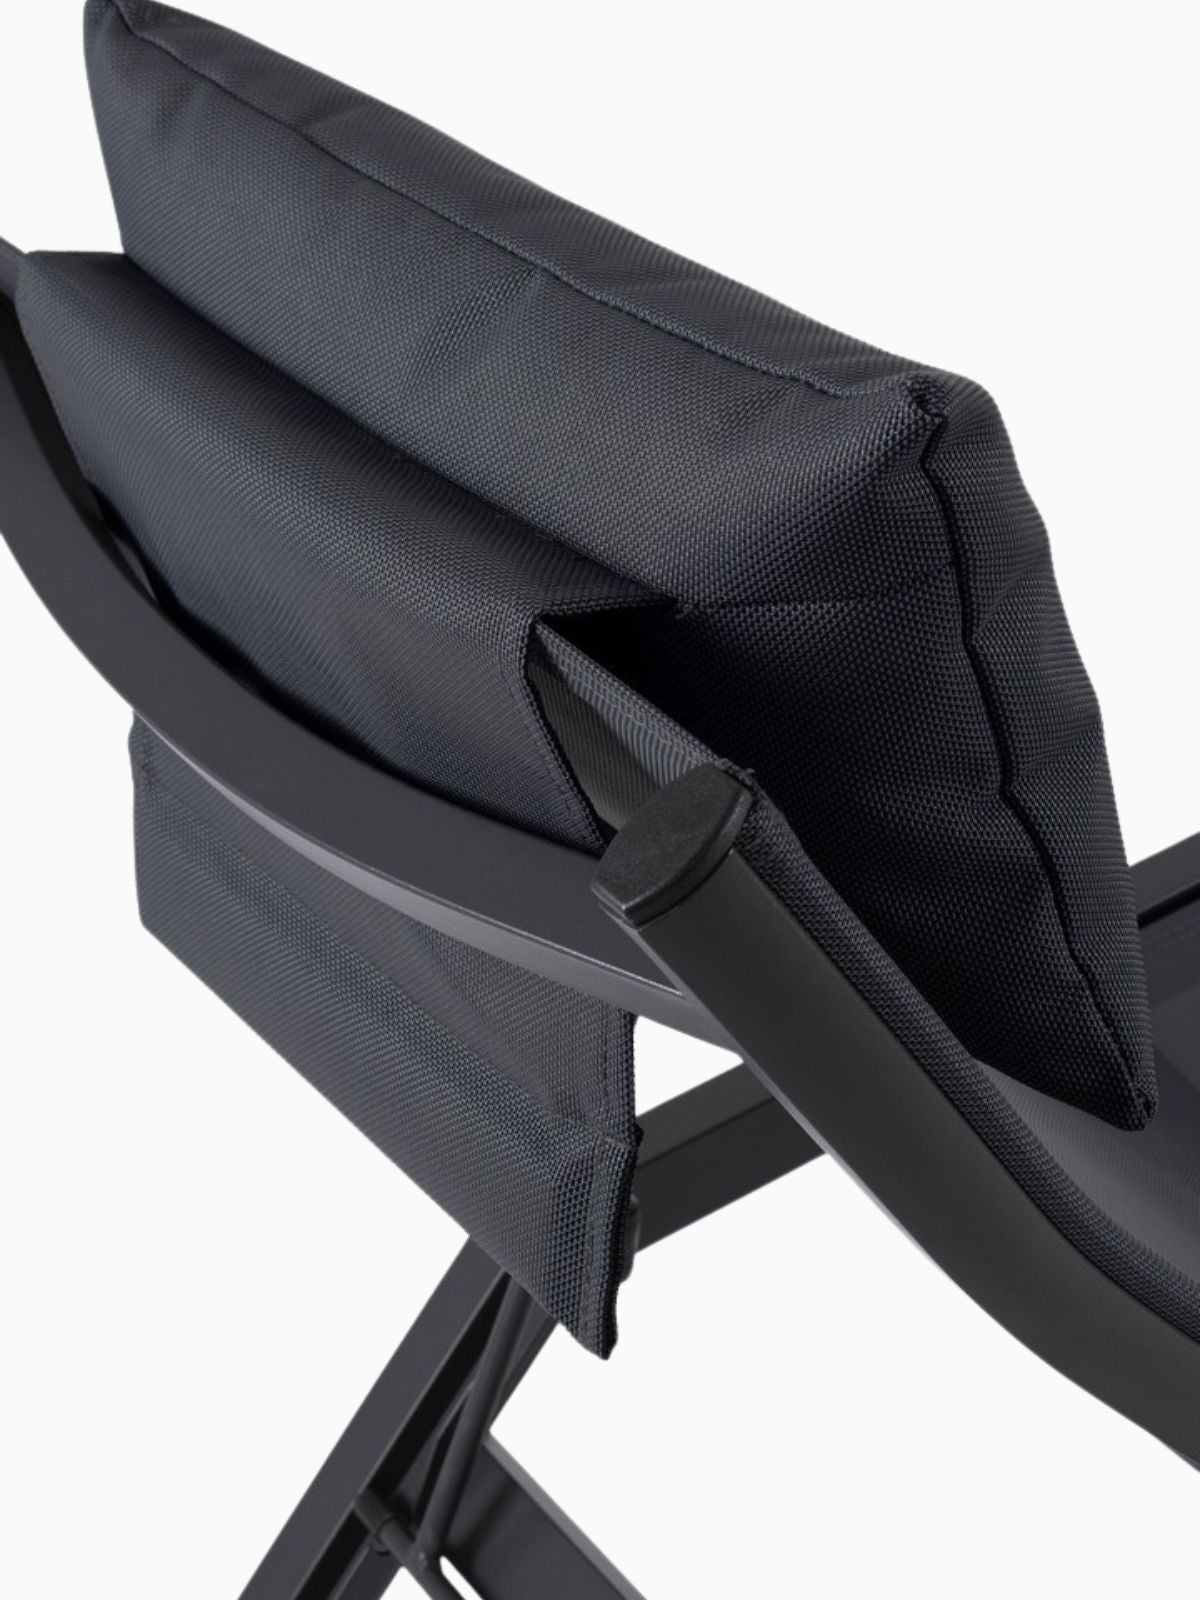 Chaise longue da esterno Krion in alluminio, colore nero-4